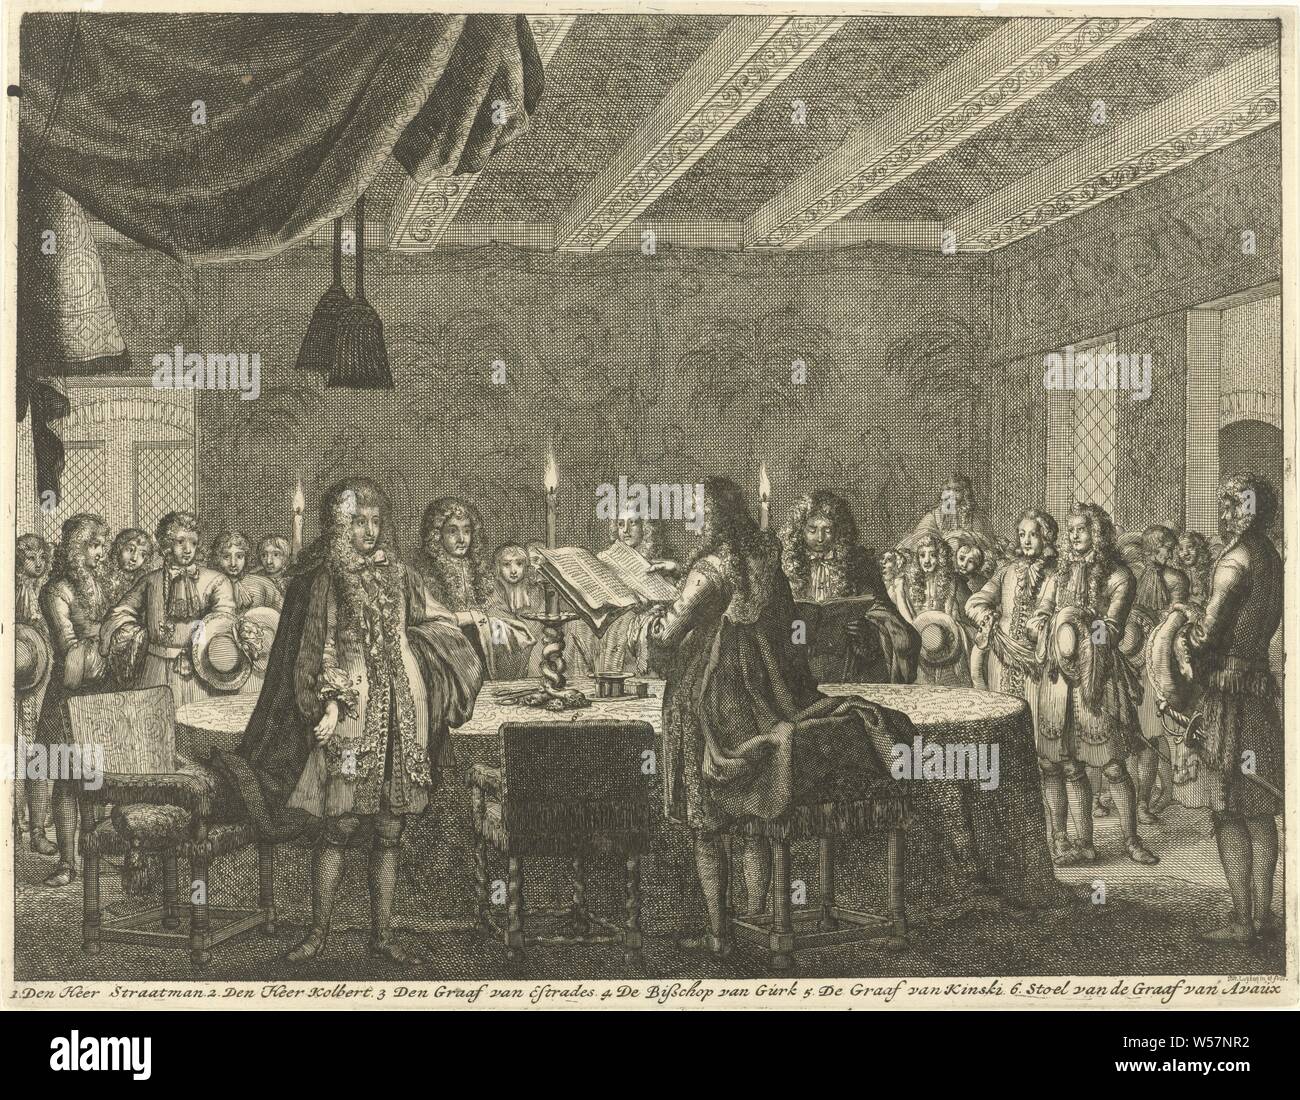 La signature du traité de paix entre la France et l'empereur allemand, le 5 février 1679, la signature du traité de paix entre la France et l'empereur allemand dans l'hôtel de ville de Nimègue à 10 heures ' soir 5 février 1679. Intérieur avec un groupe d'hommes debout autour d'une table aux chandelles. Parmi les négociateurs sont : Graf Strattmann, Marquis de Croissy (Colbert), Comte d'estrades, l'évêque de Gurk, Graf Kinsky, et la chaise vide du Comte d'Avaux. Dans la marge la légende 1-5, signature du traité de paix, dans la conclusion de la paix, de l'Hôtel de Ville, Theodor Heinrich Graf Strattmann, Alethaeus Banque D'Images